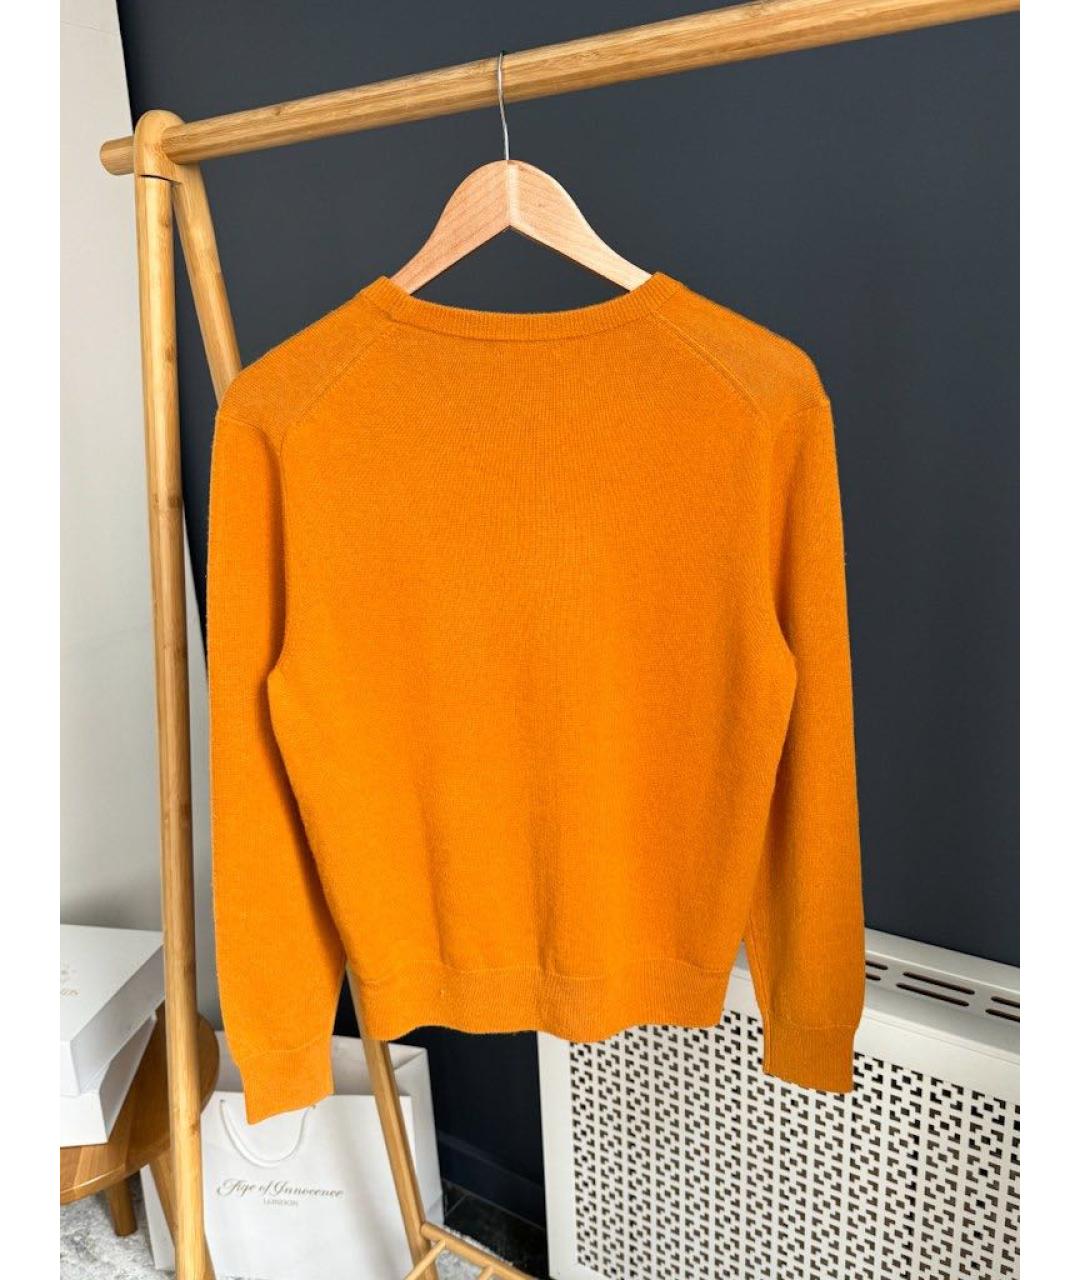 12 STOREEZ Оранжевый шерстяной джемпер / свитер, фото 2